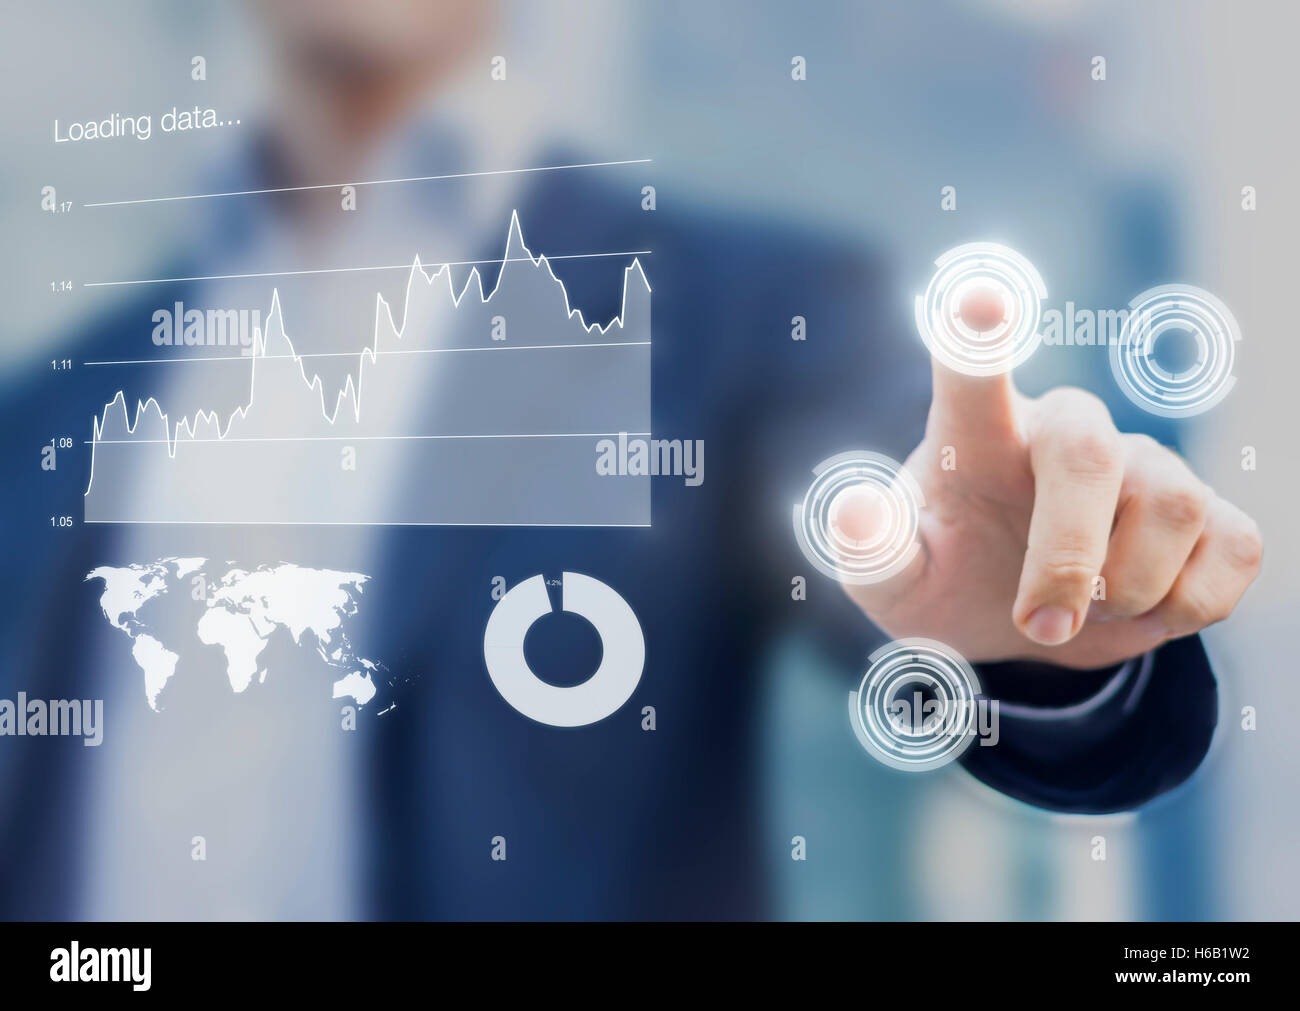 Head-up display interface tableau de bord et intelligence d'affaires graphiques avec les doigts d'affaires touchant les boutons virtuels Banque D'Images